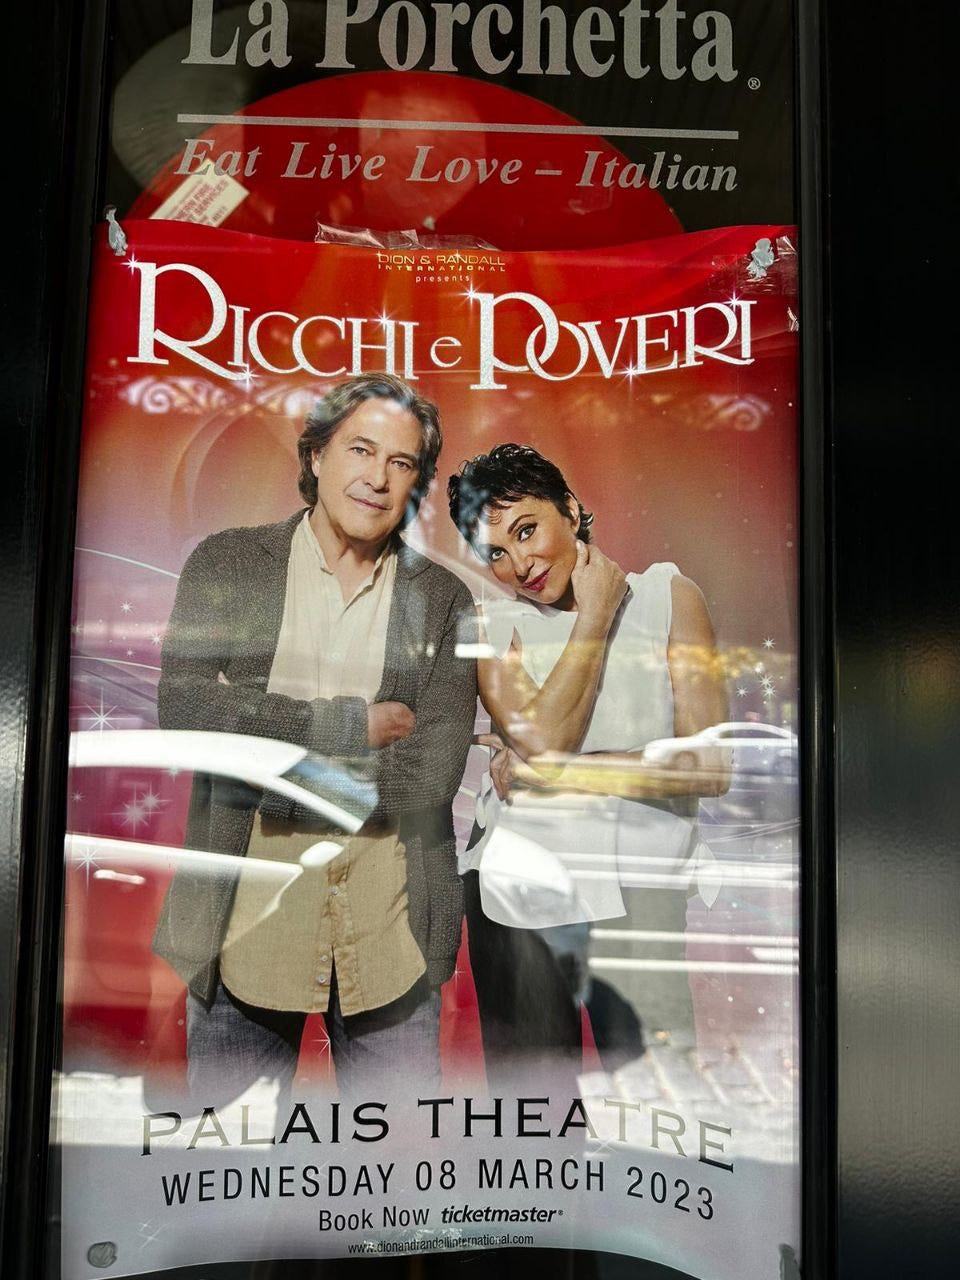 Locandina del concerto dei Ricchi e Pover al Palais Theatre di Melbourne, previsto per mercoledì 8 marzo.